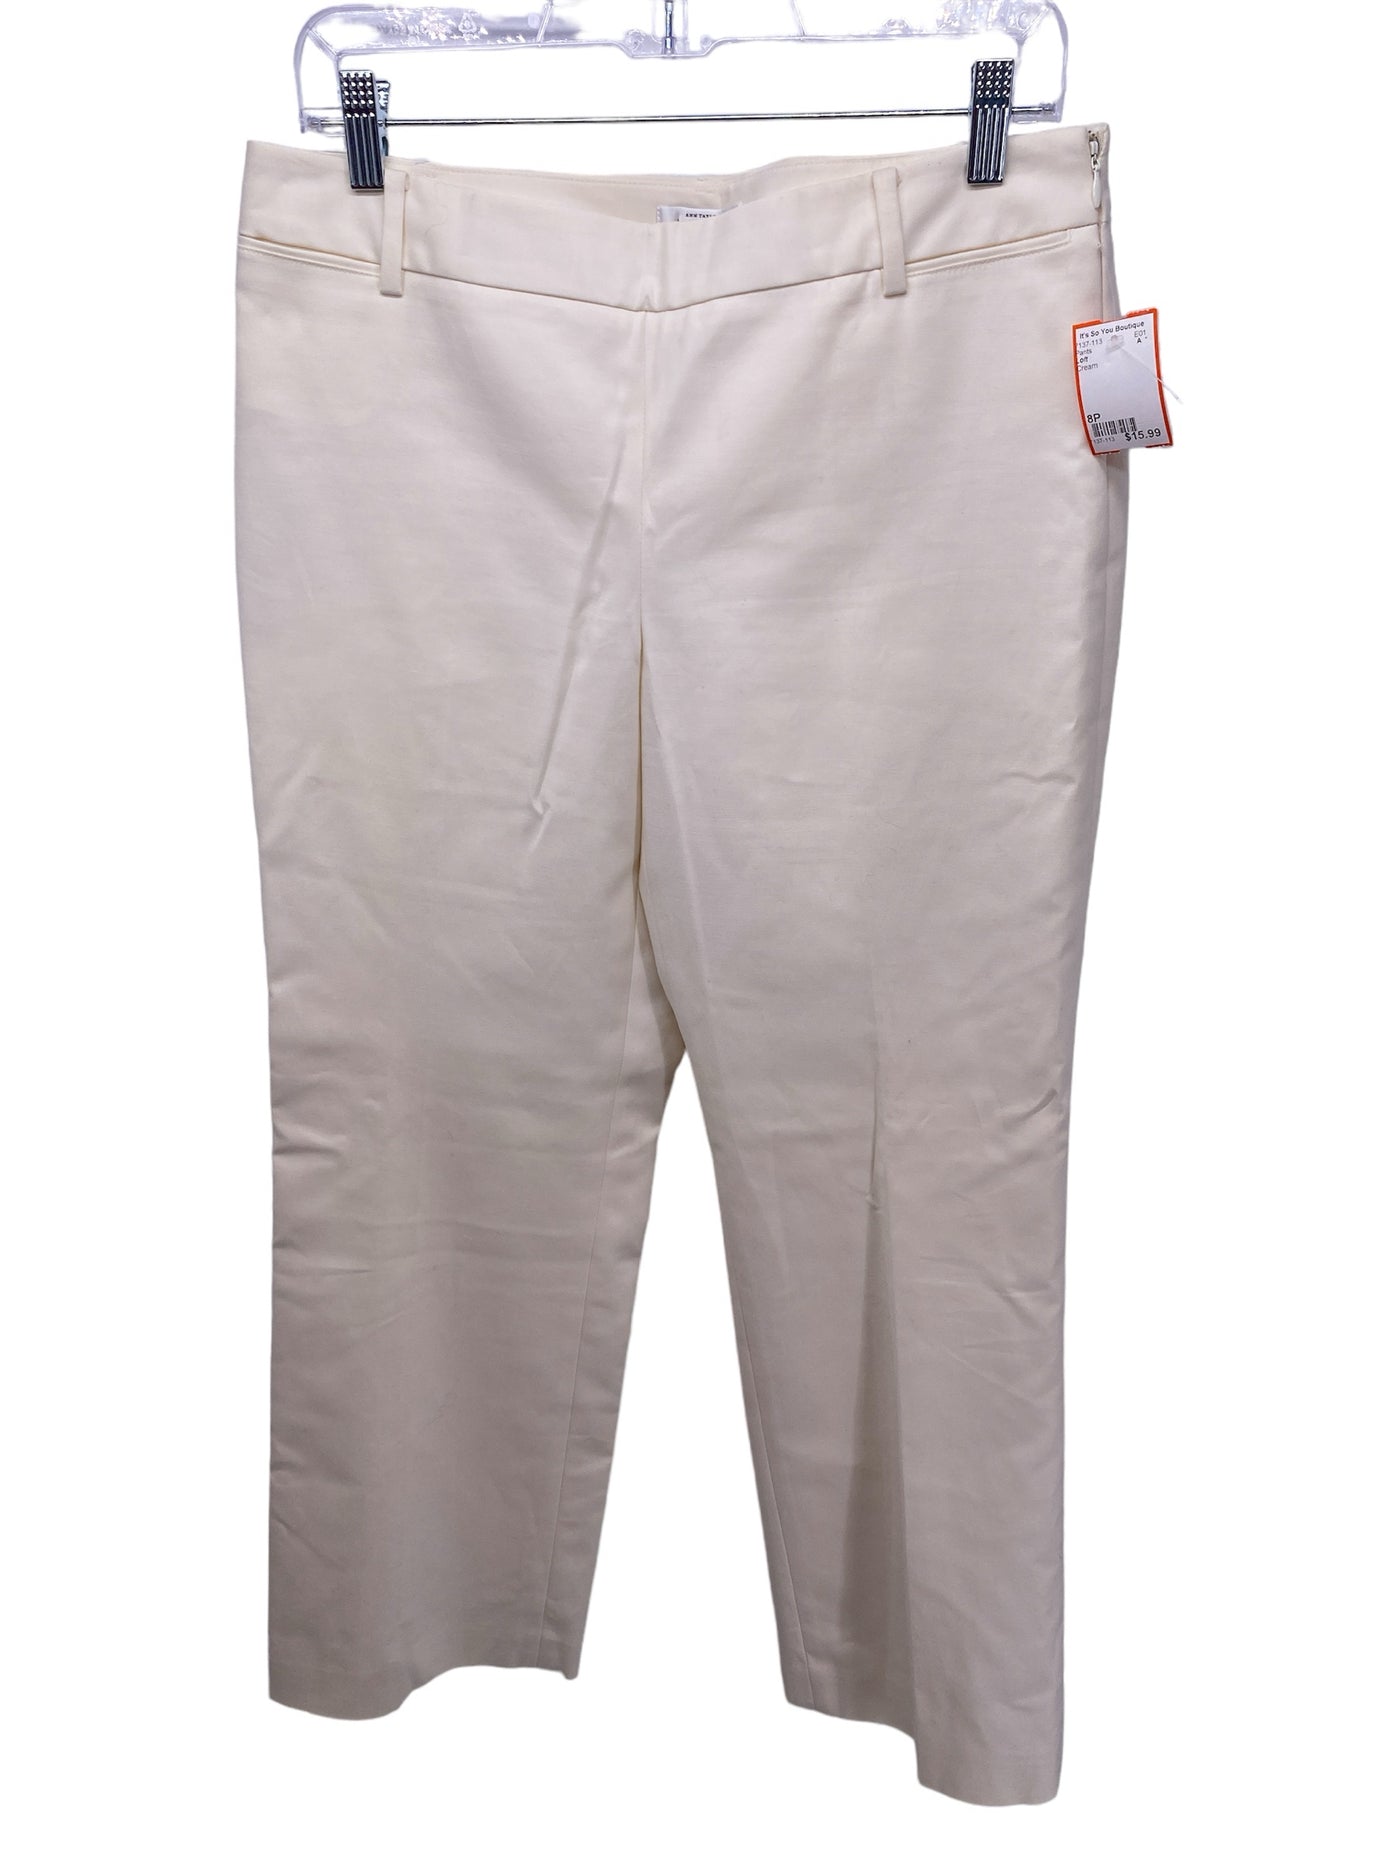 Loft Misses Size 8P Cream Pants